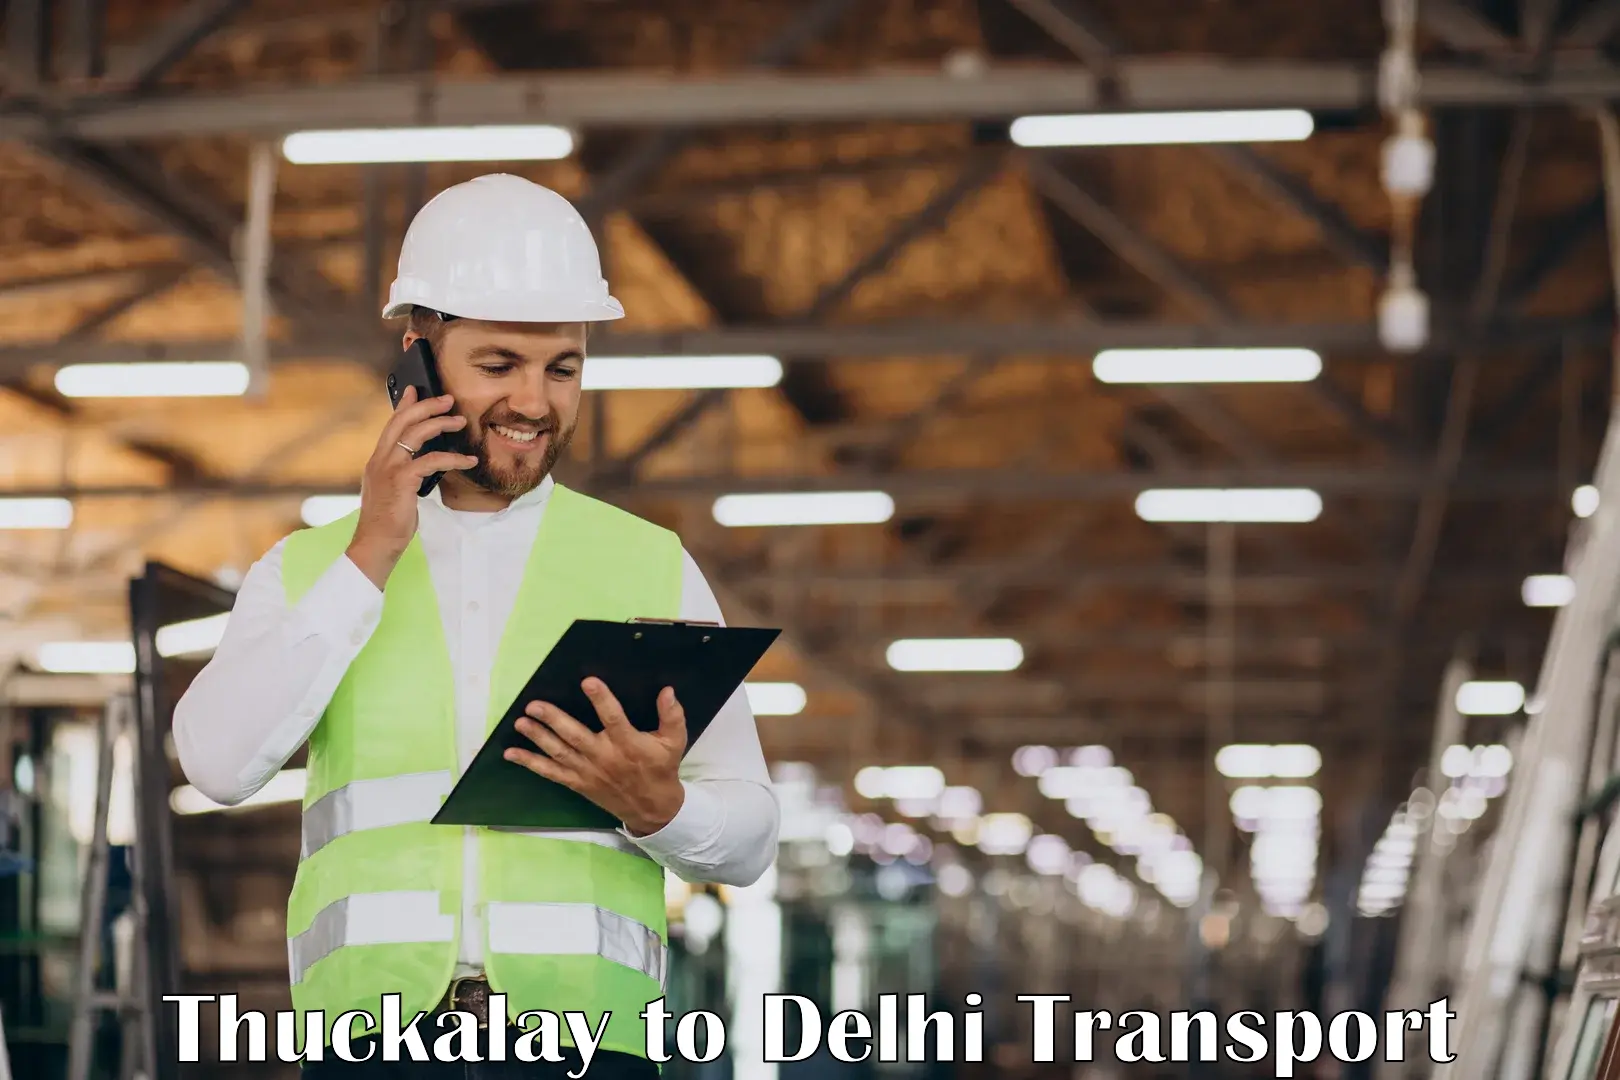 Daily transport service Thuckalay to IIT Delhi